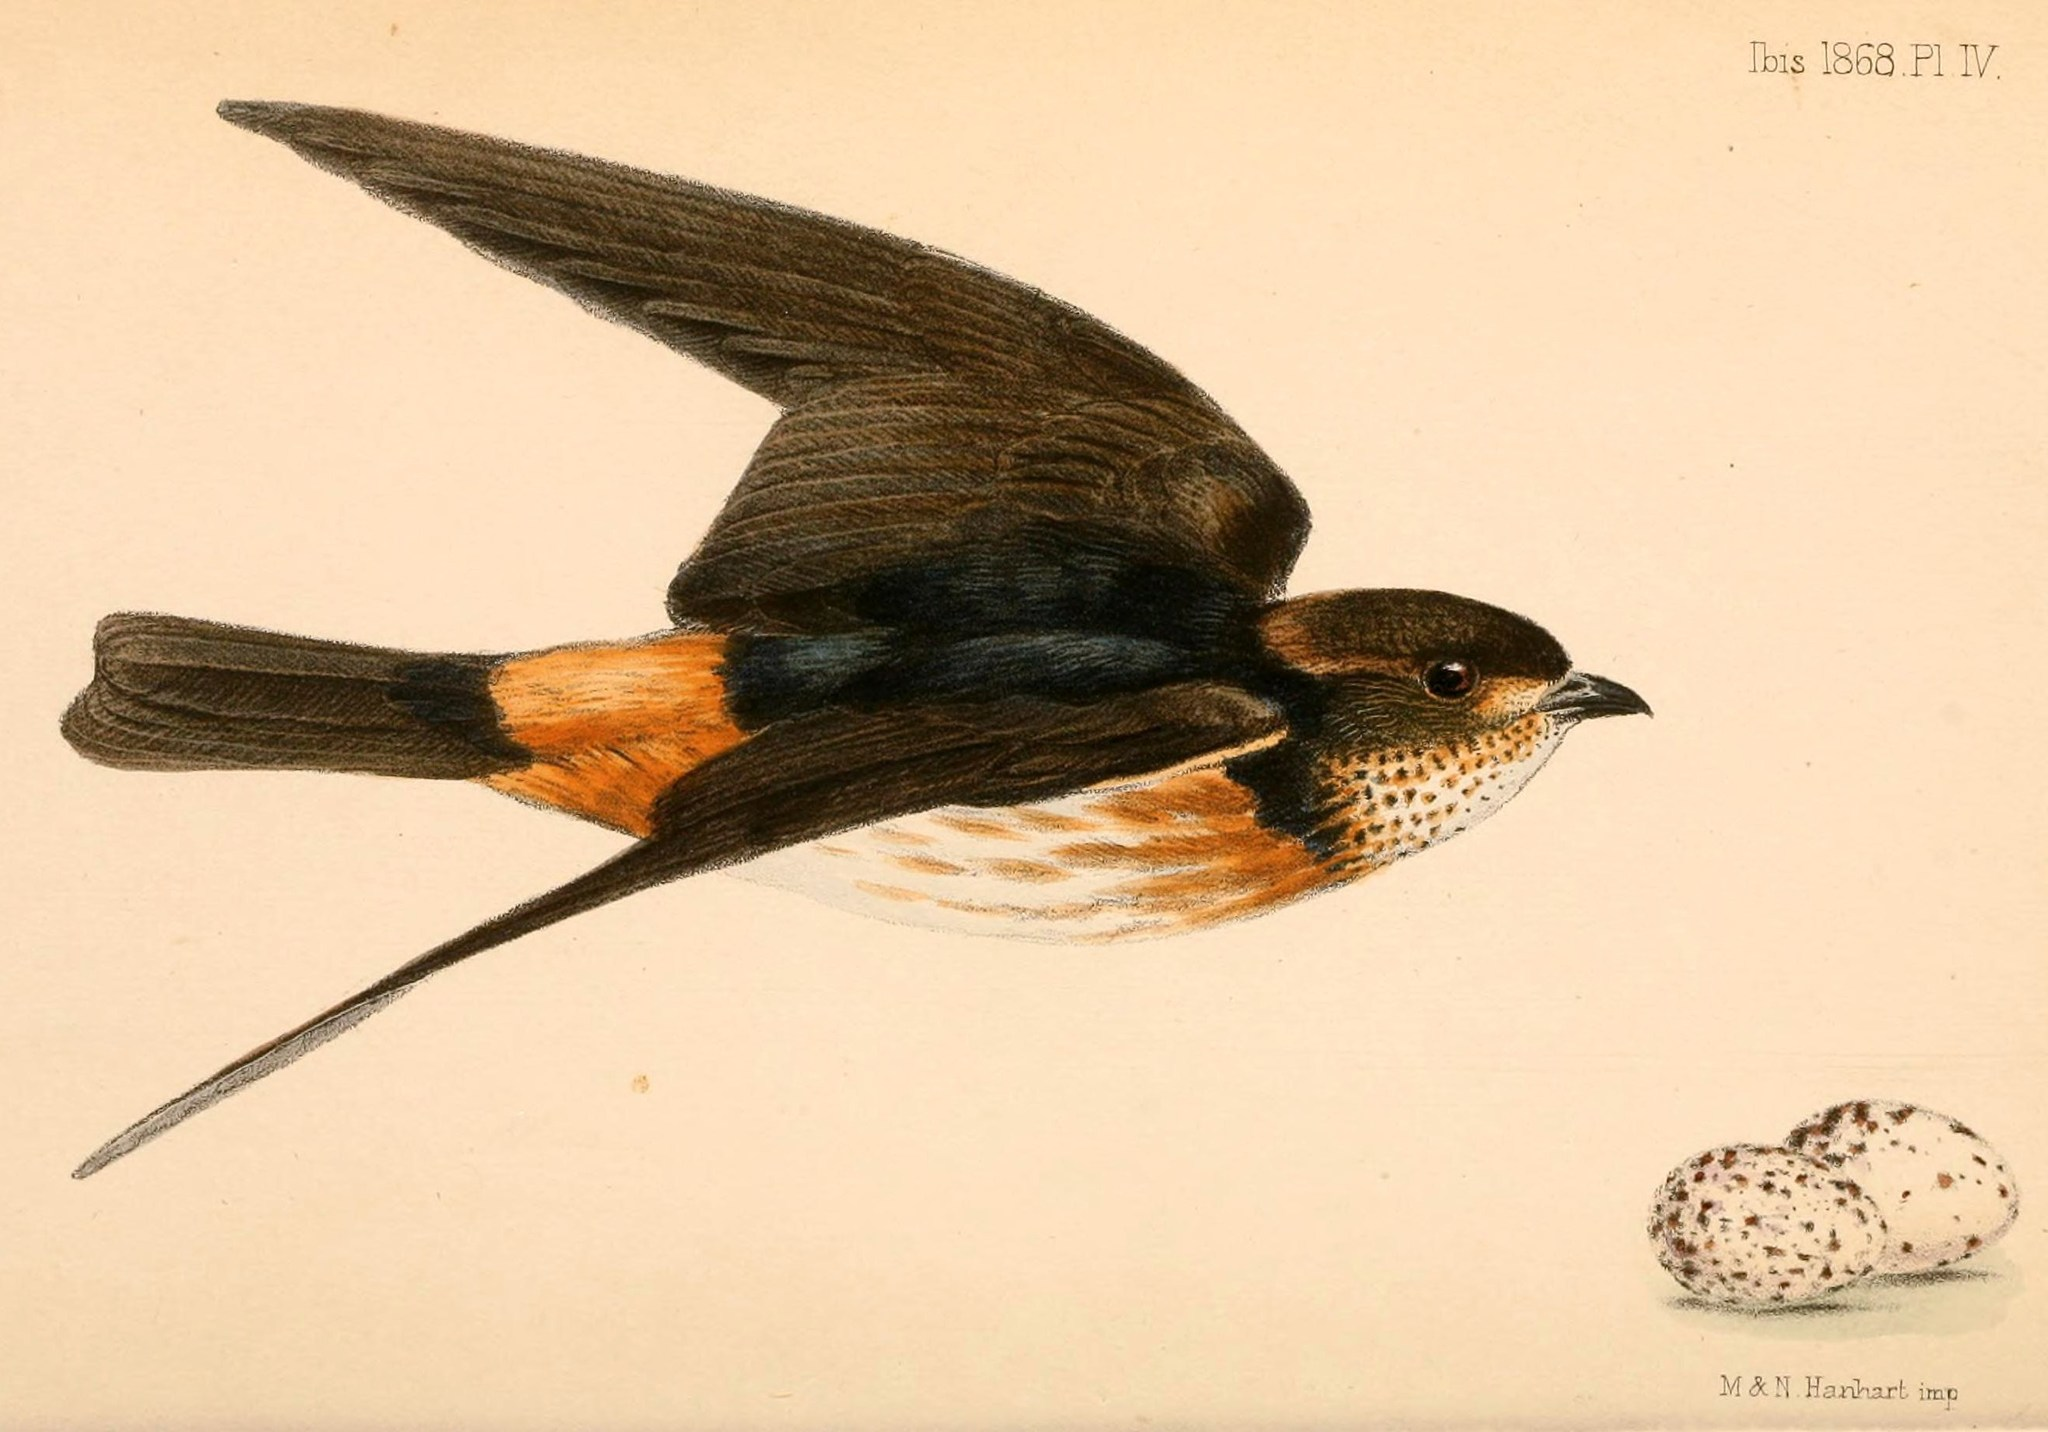 Sedosito piquiblanco - Sericornis spilodera.